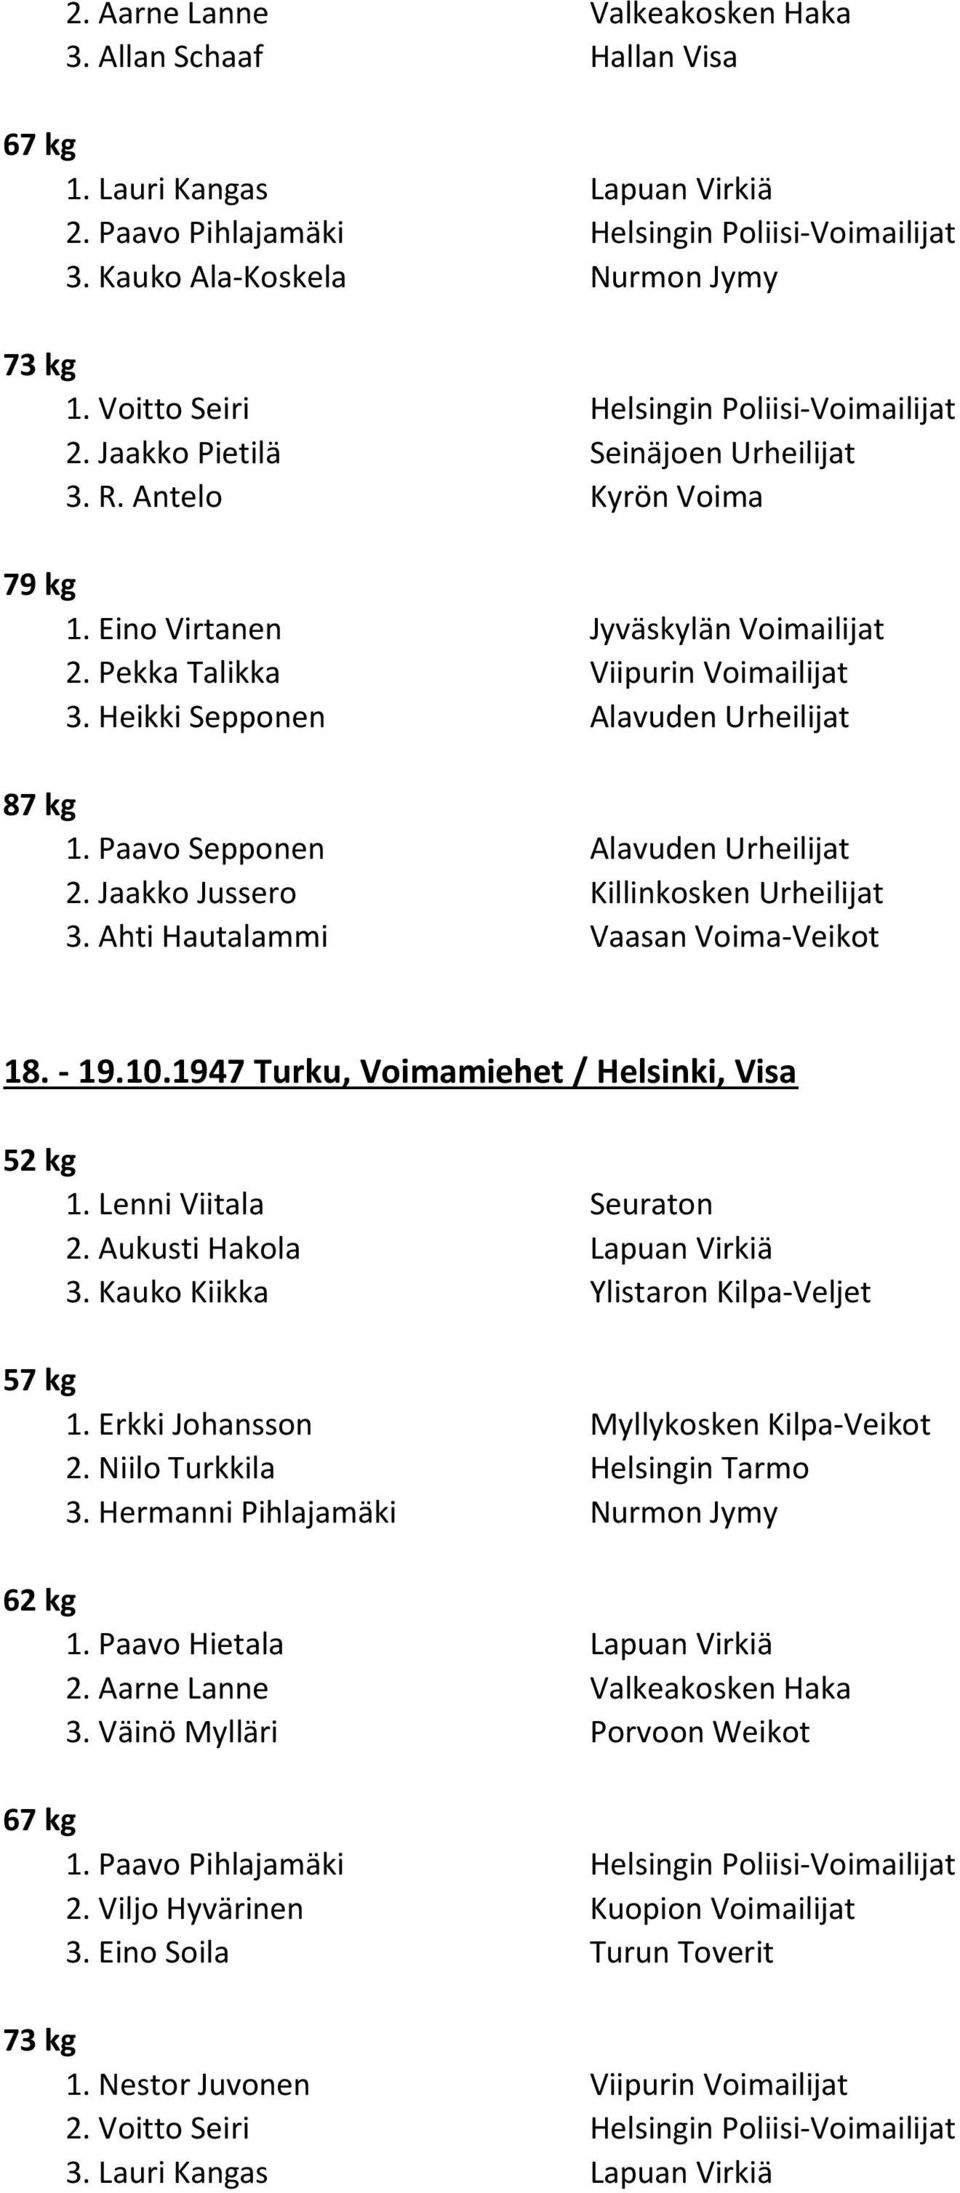 Heikki Sepponen Alavuden Urheilijat 1. Paavo Sepponen Alavuden Urheilijat 2. Jaakko Jussero Killinkosken Urheilijat 3. Ahti Hautalammi Vaasan Voima-Veikot 18. - 19.10.